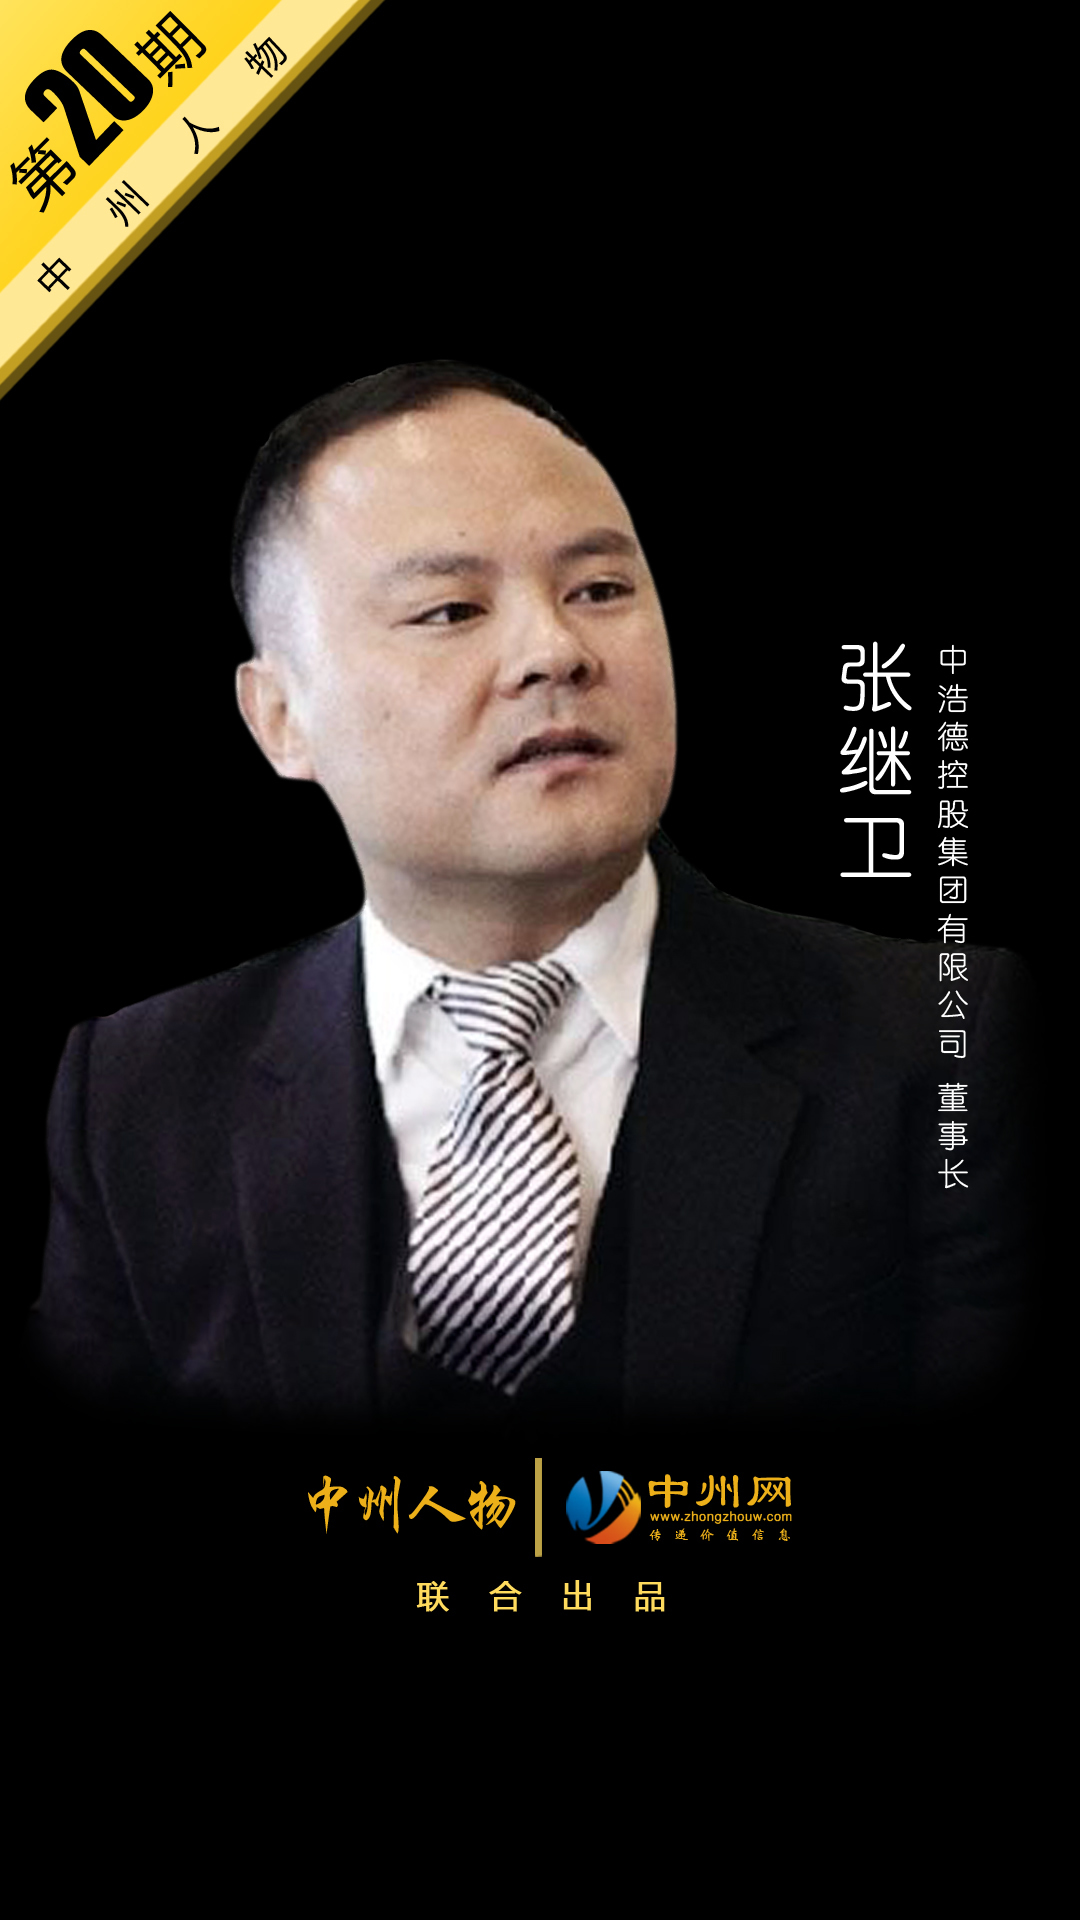 【中州人物 第20期】中浩德控股集团董事长——张继卫